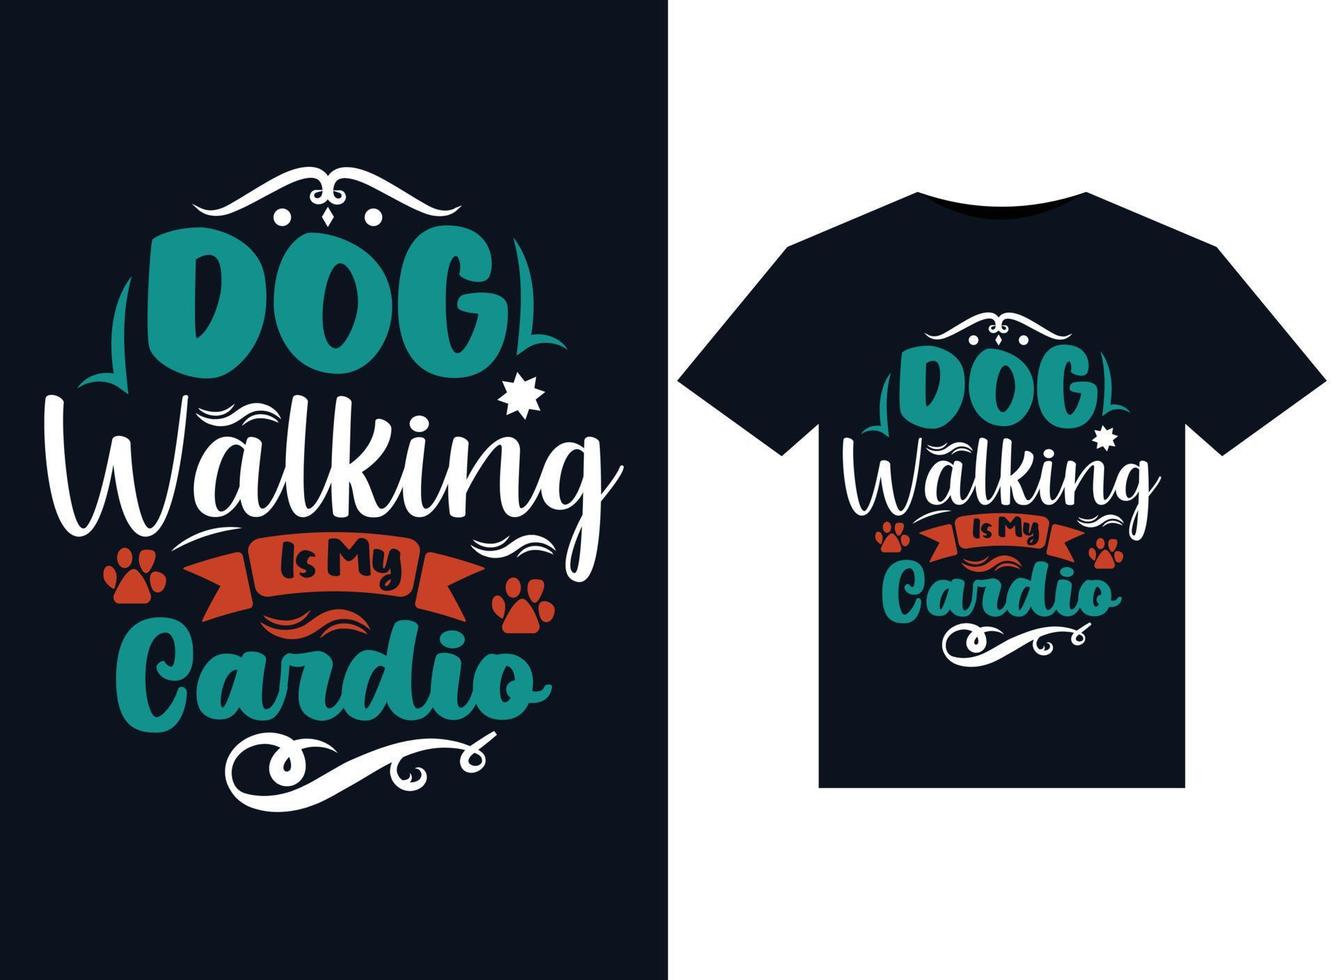 Hundespaziergänge sind meine Cardio-Illustrationen für druckfertige T-Shirt-Designs vektor